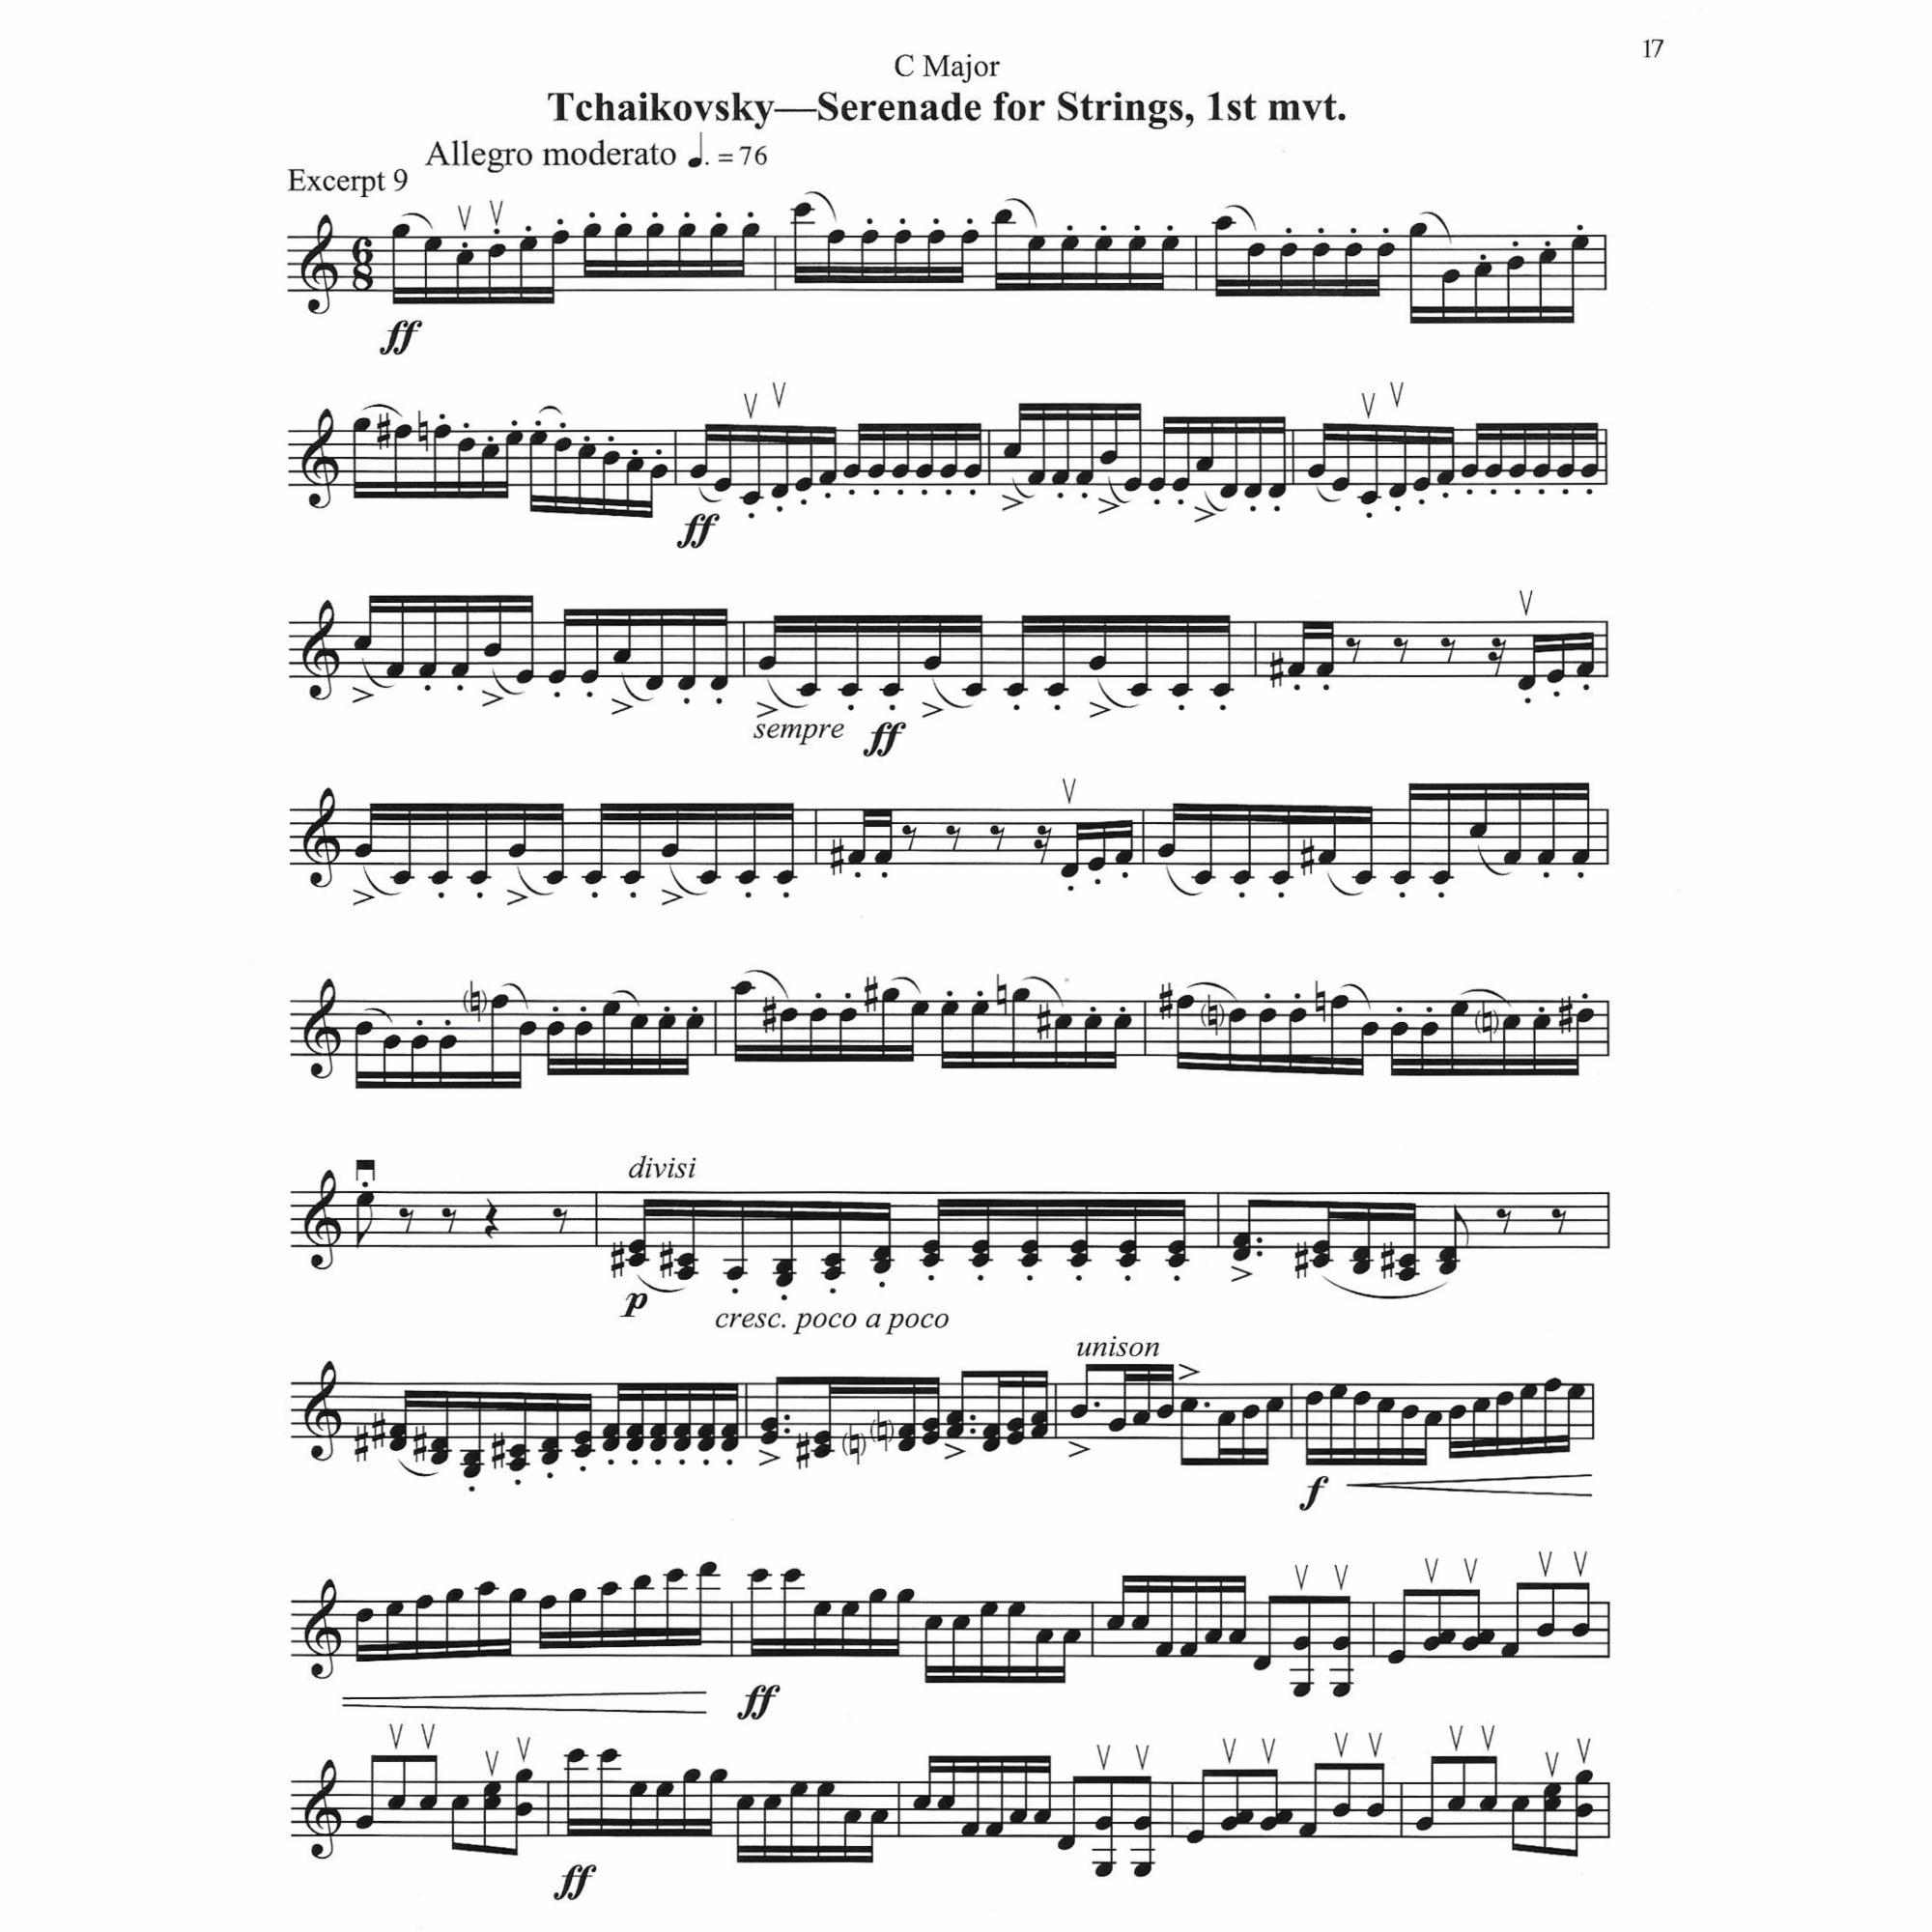 Sample: Violin (Pg. 17)